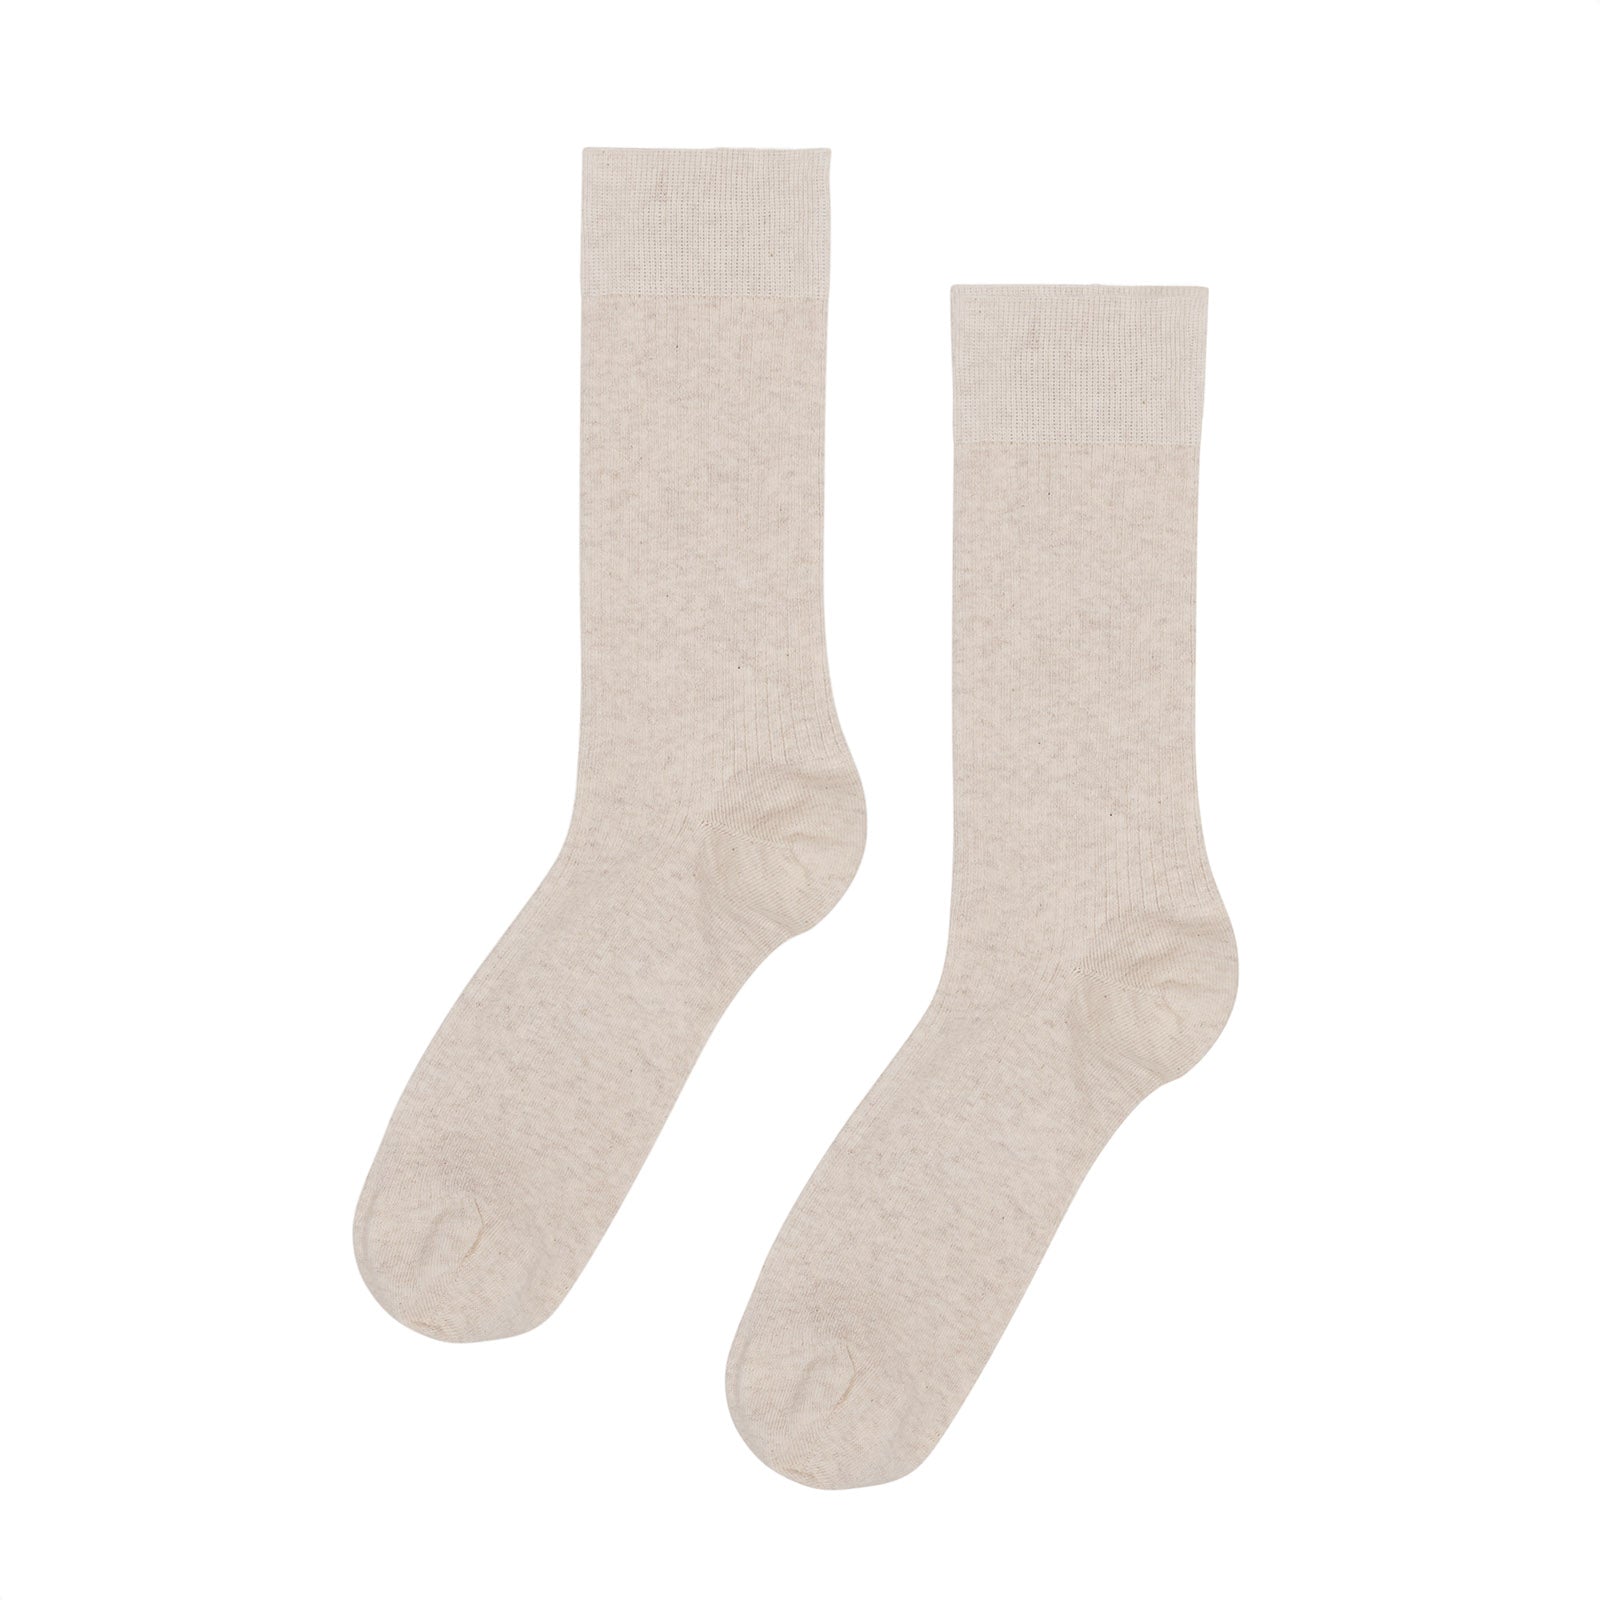 Organic Sock Ivory White One Size